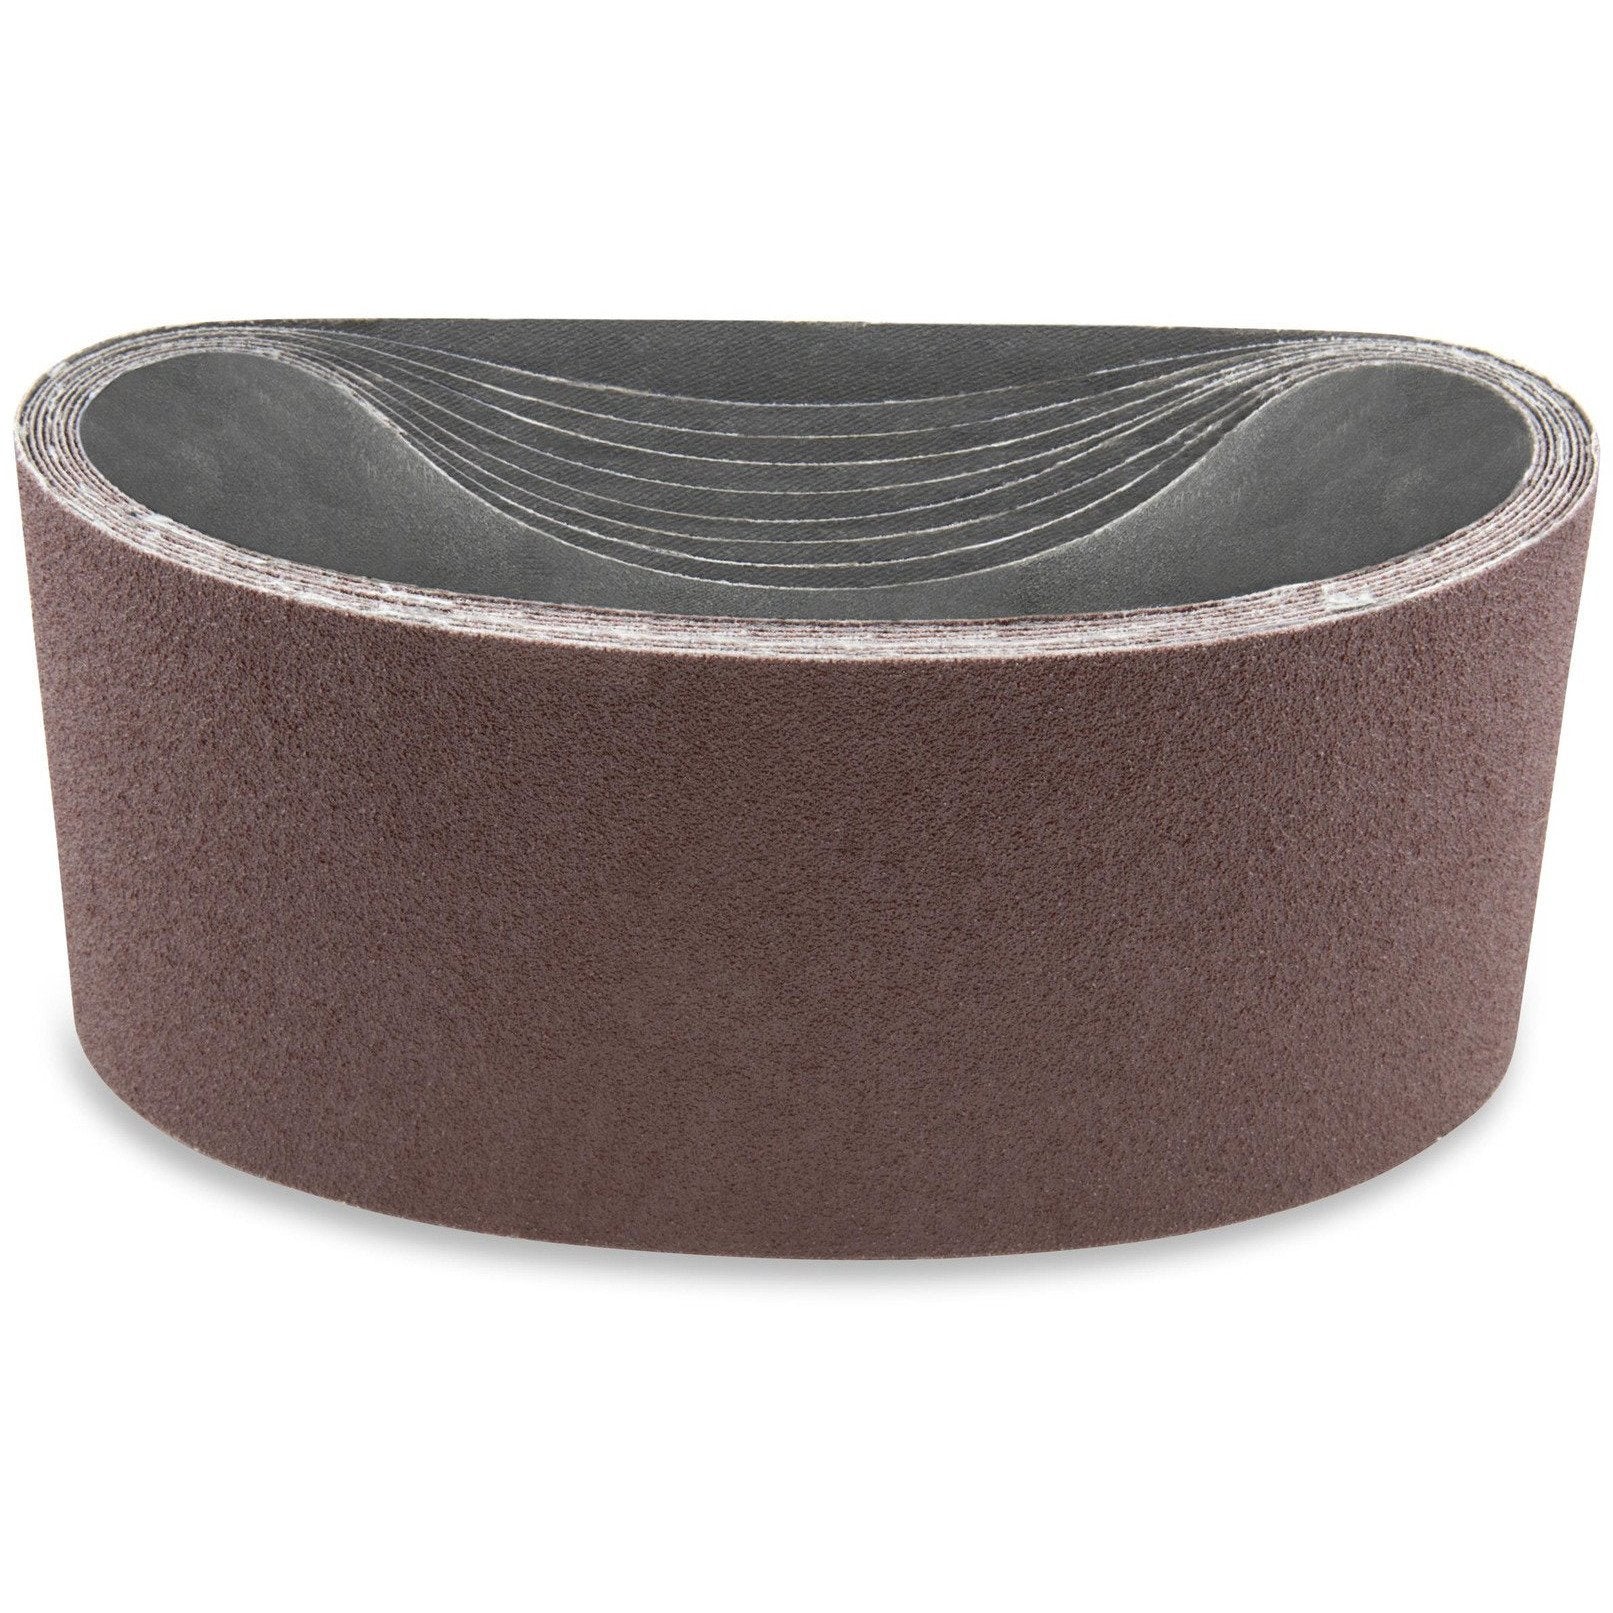 2 1/2 X 16 Inch Aluminum Oxide Metal Sanding Belts, 6 Pack - Red Label Abrasives